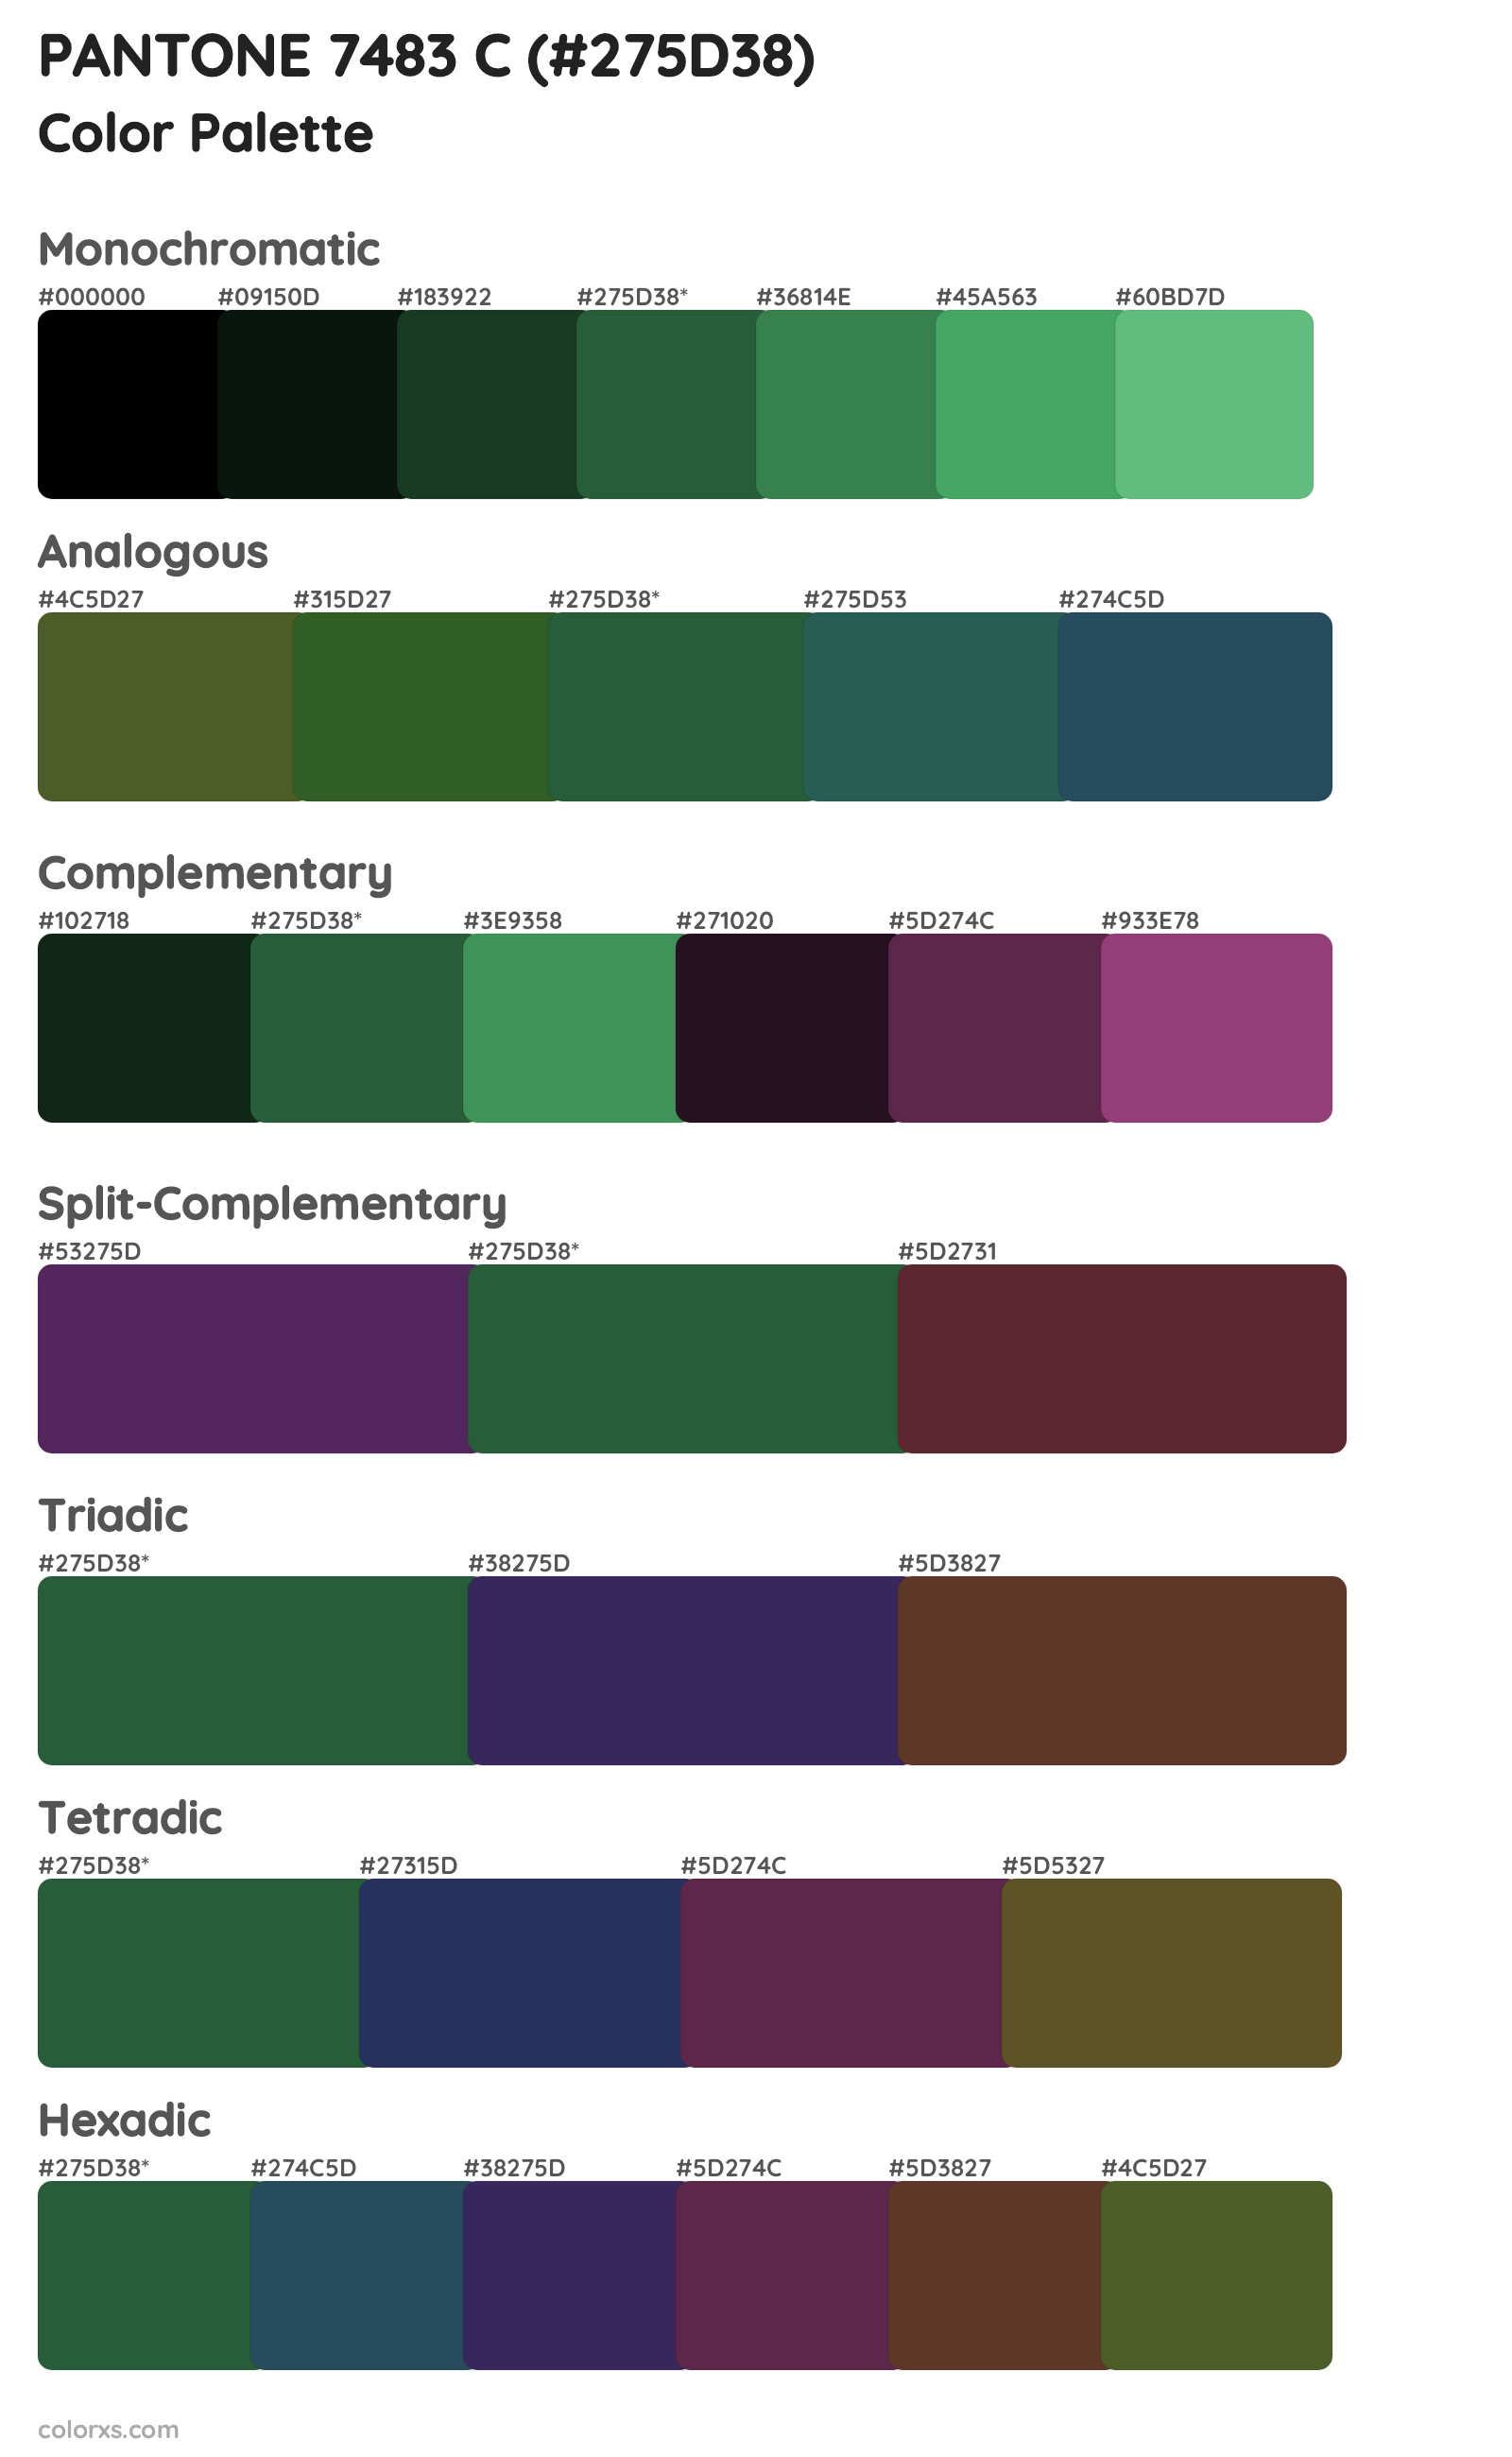 PANTONE 7483 C Color Scheme Palettes